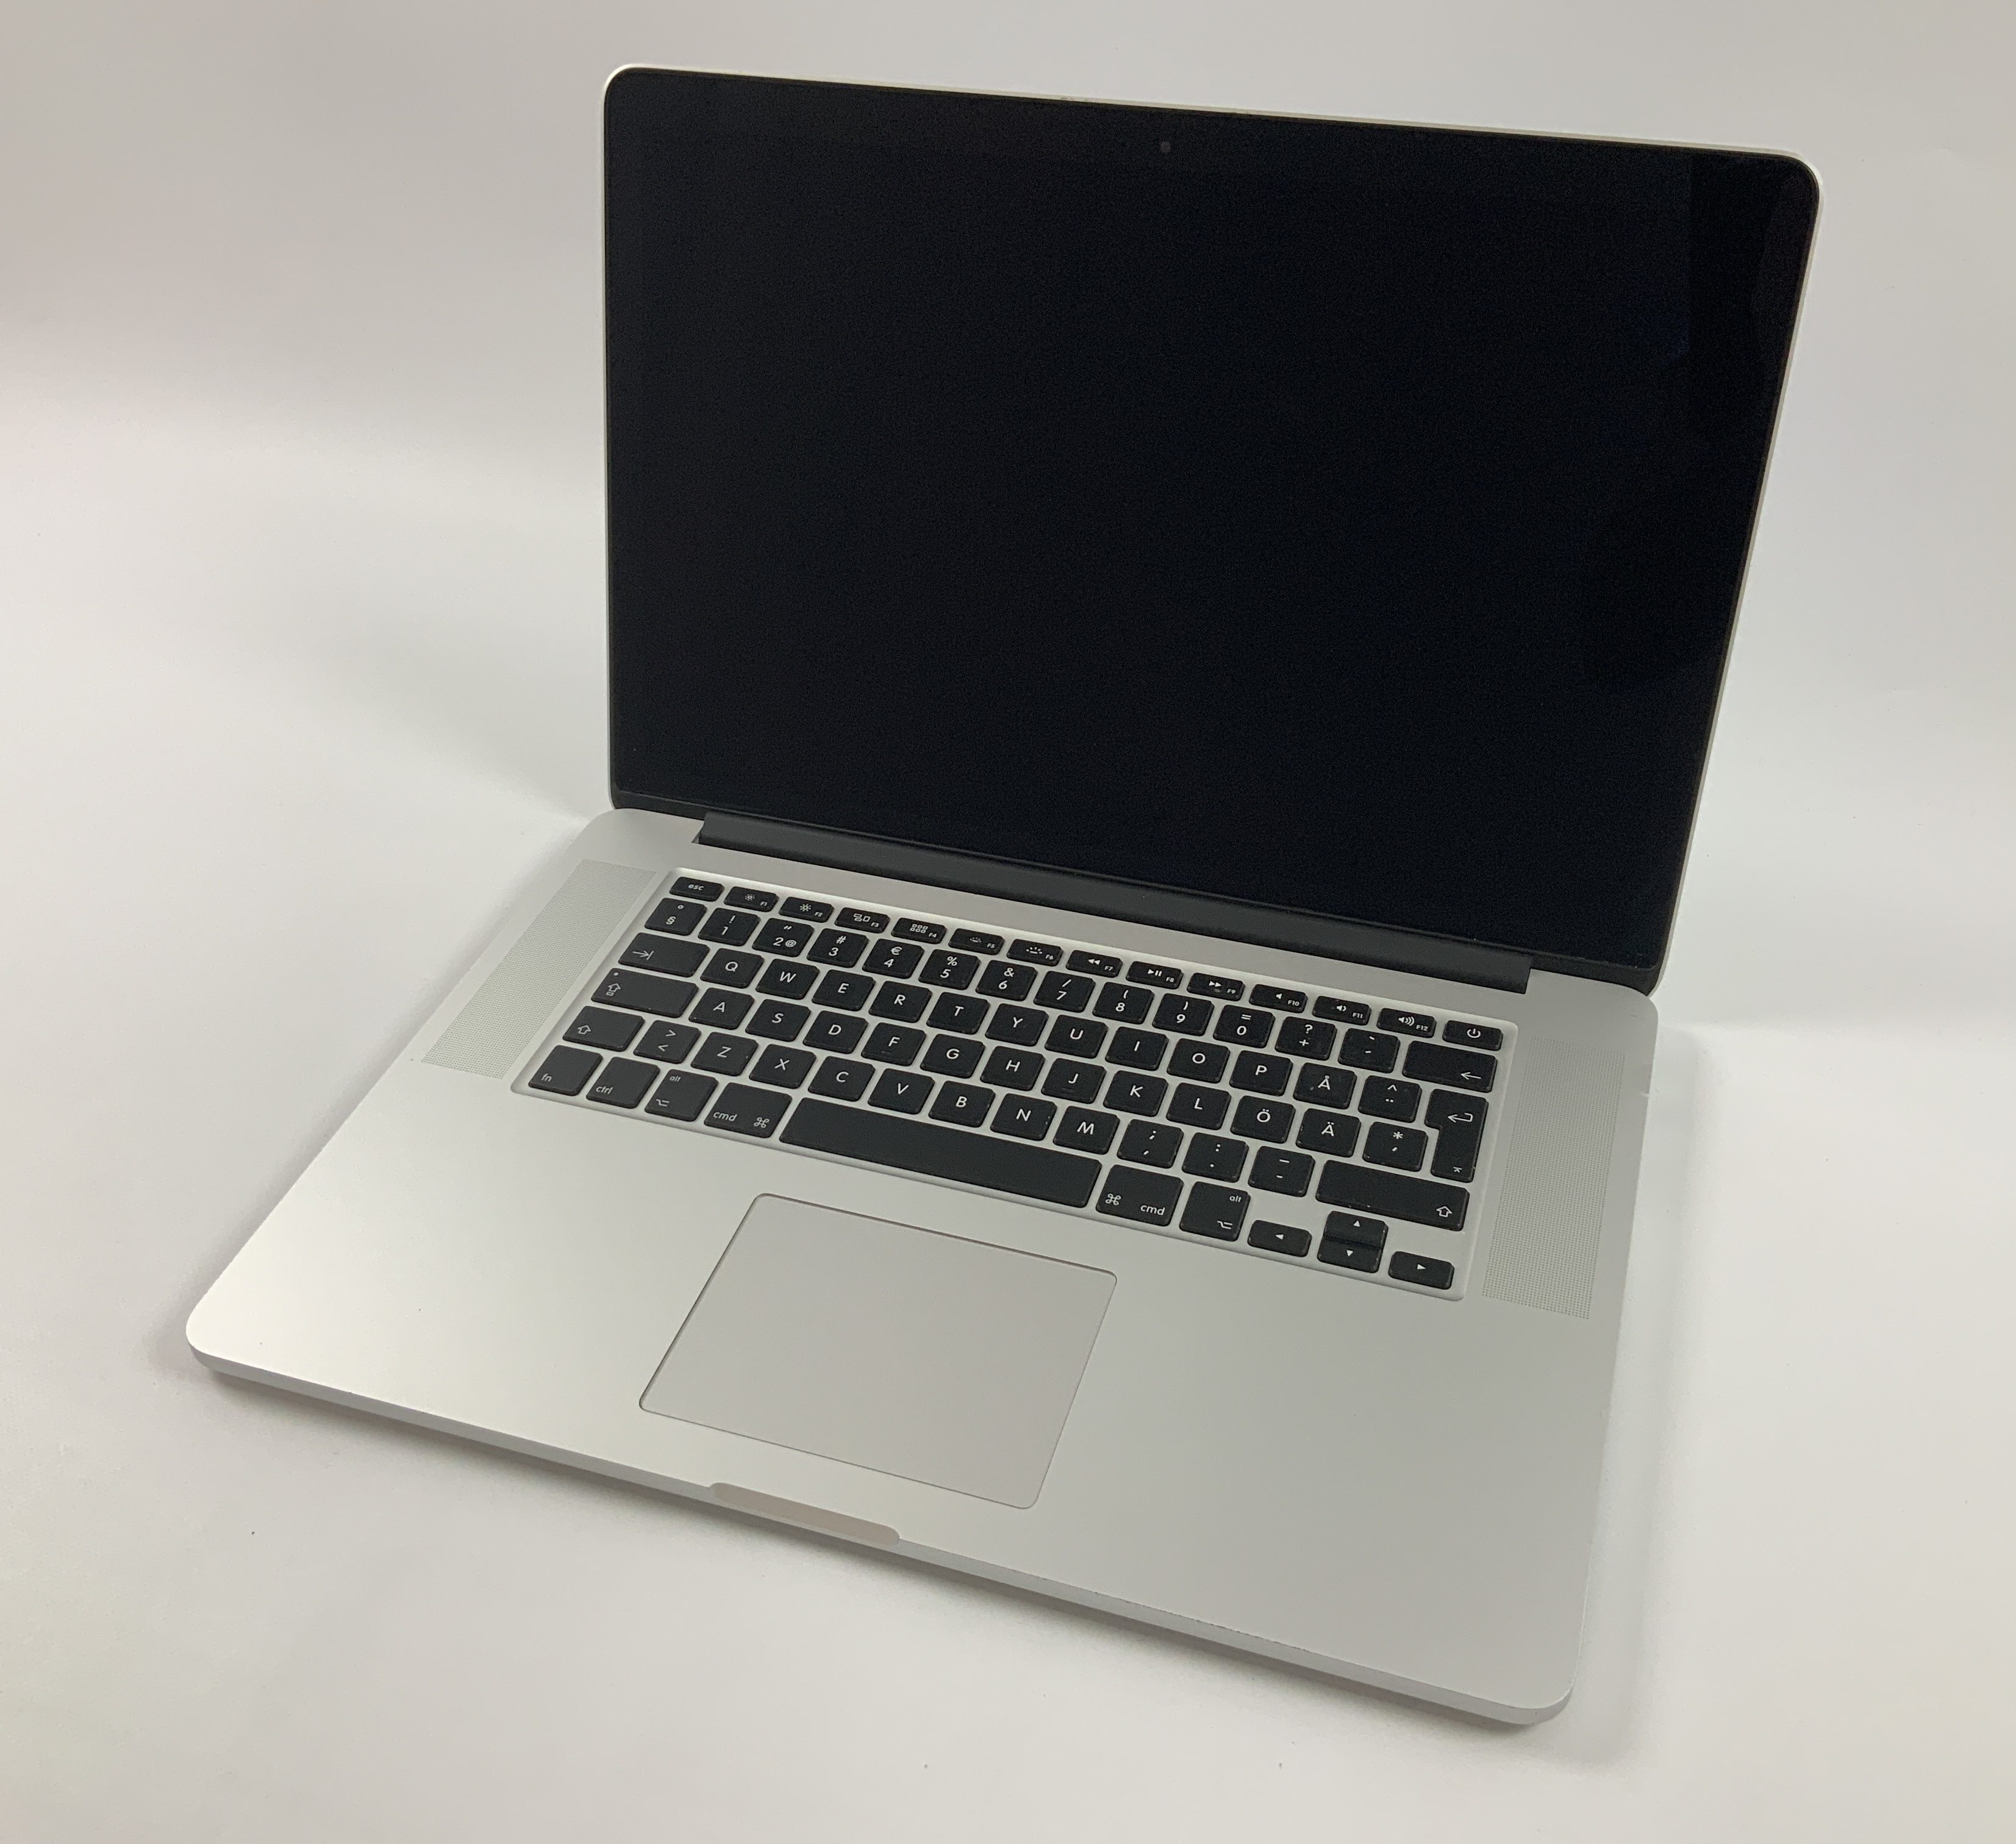 MacBook Pro Retina 15" Mid 2015 (Intel Quad-Core i7 2.2 GHz 16 GB RAM 256 GB SSD), Intel Quad-Core i7 2.2 GHz, 16 GB RAM, 256 GB SSD, obraz 1